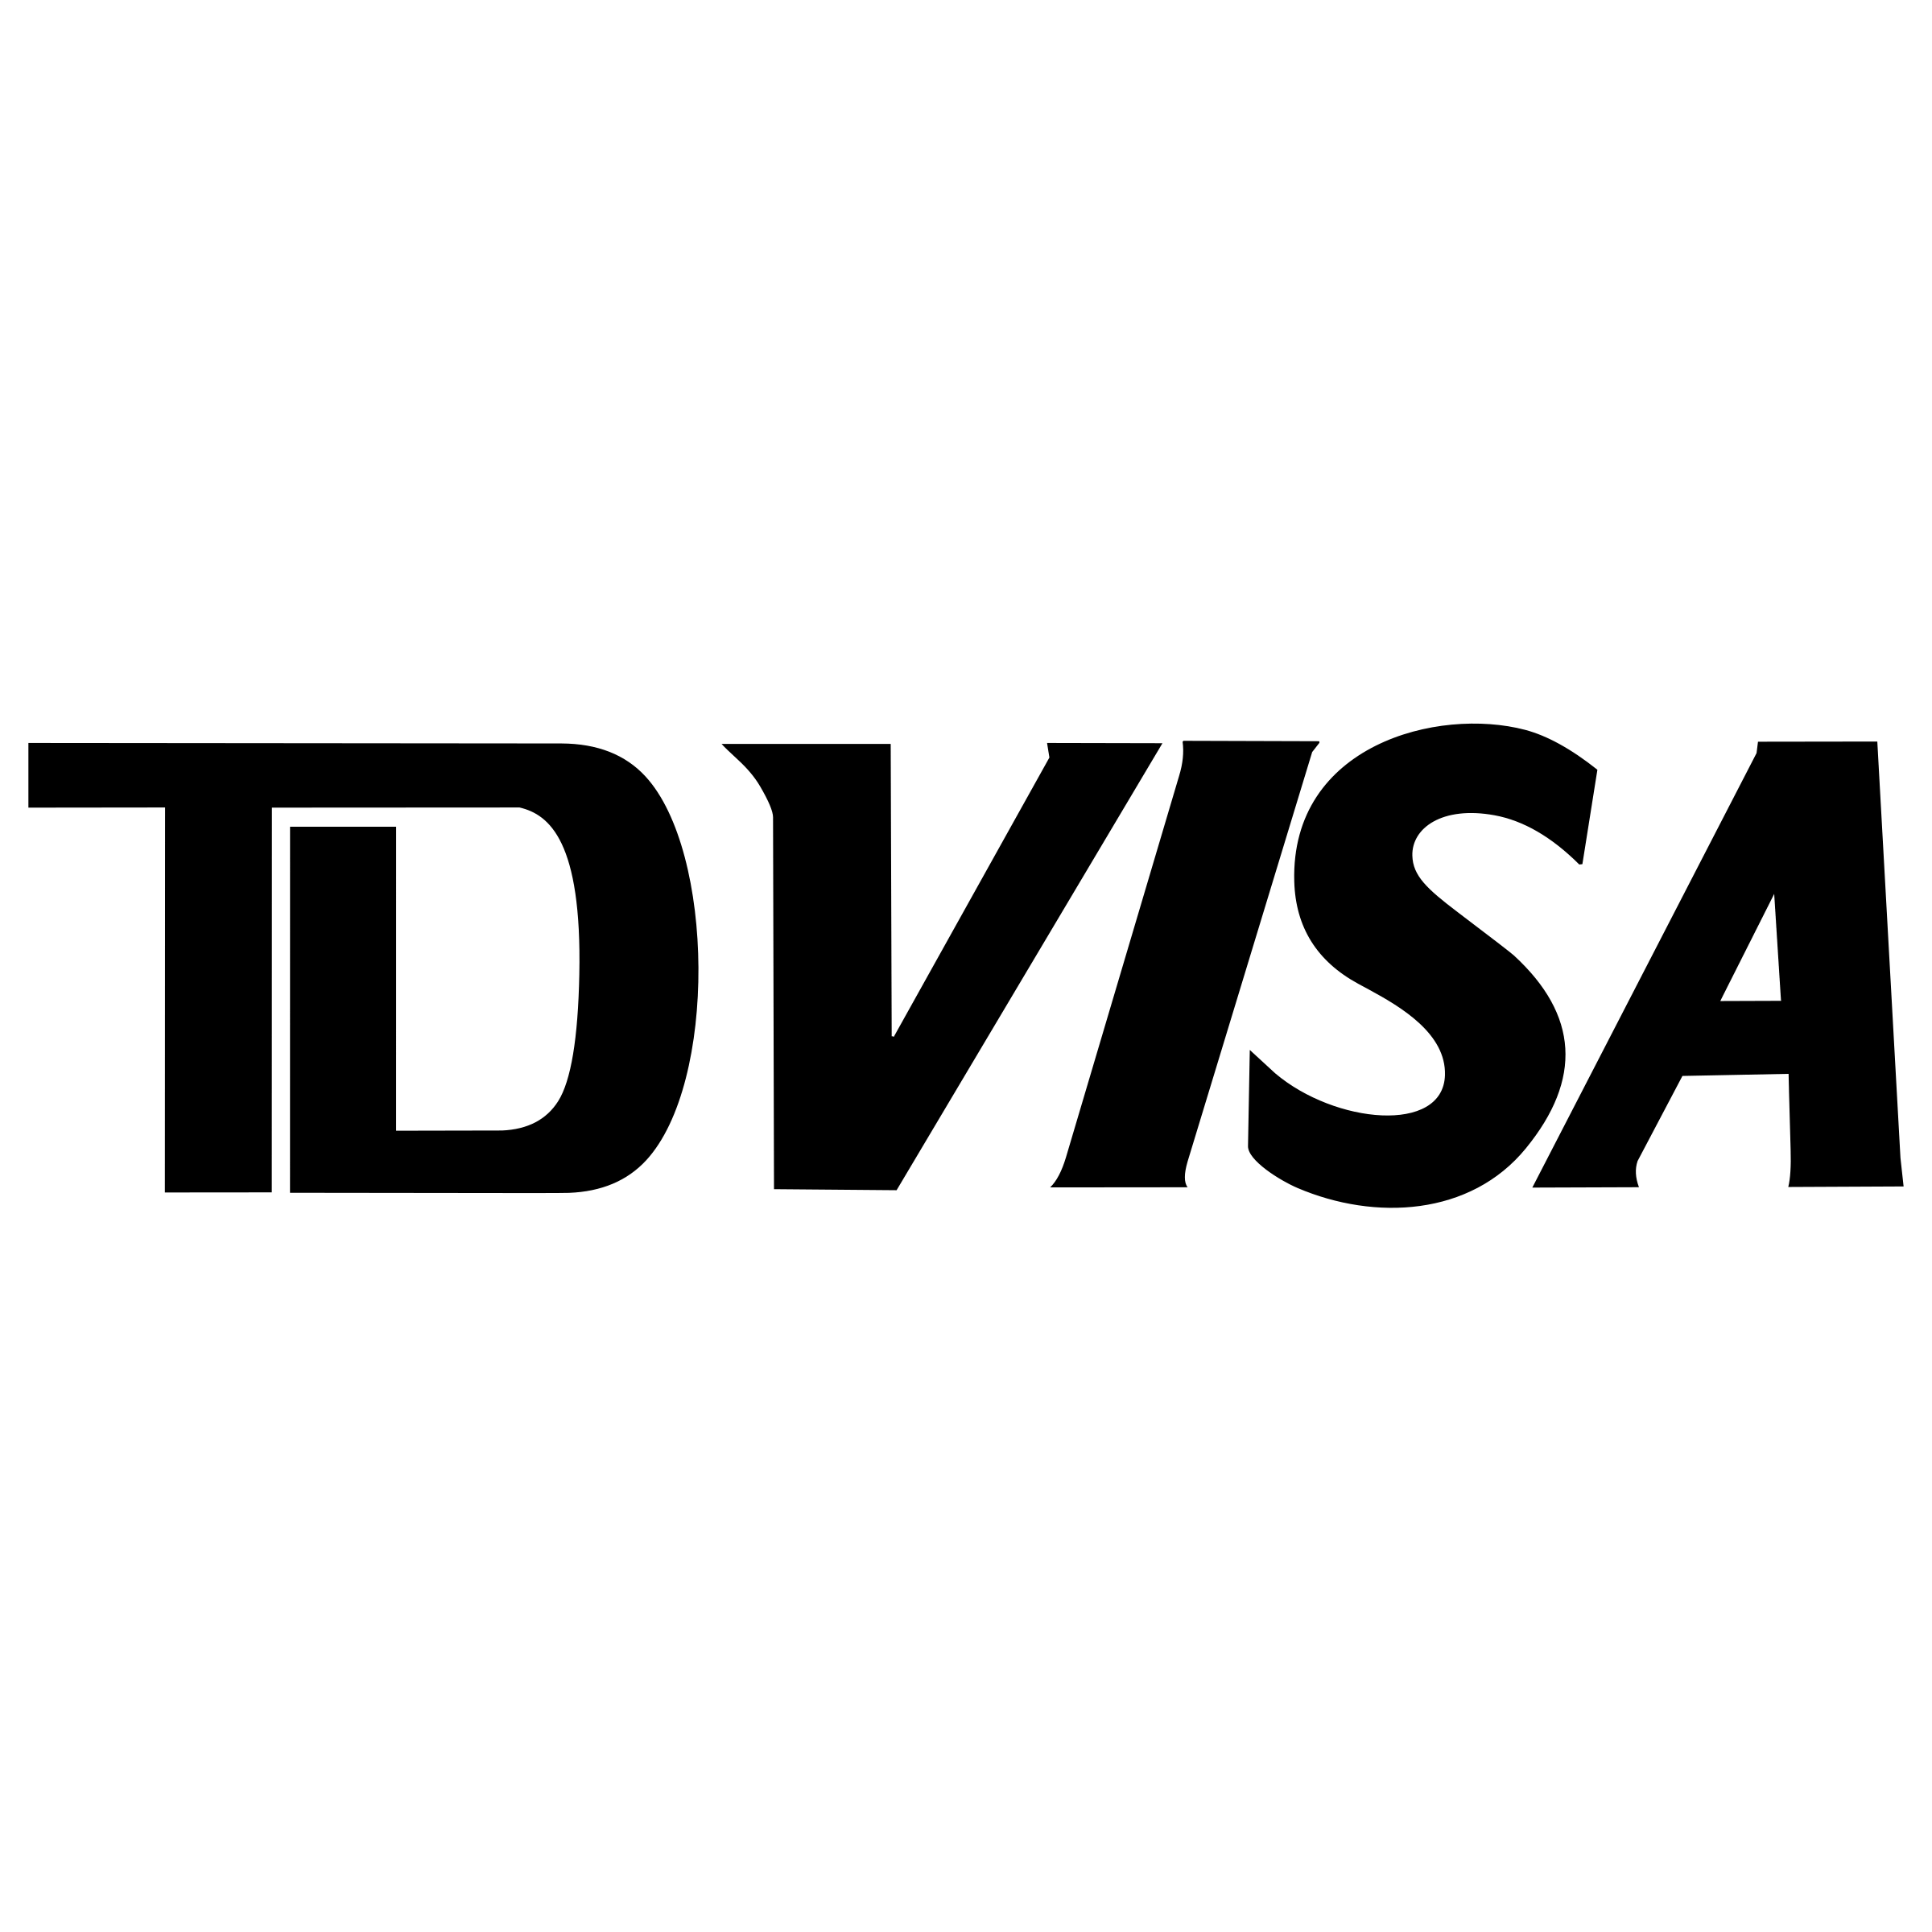 White Visa Logo - TD VISA Logo PNG Transparent & SVG Vector